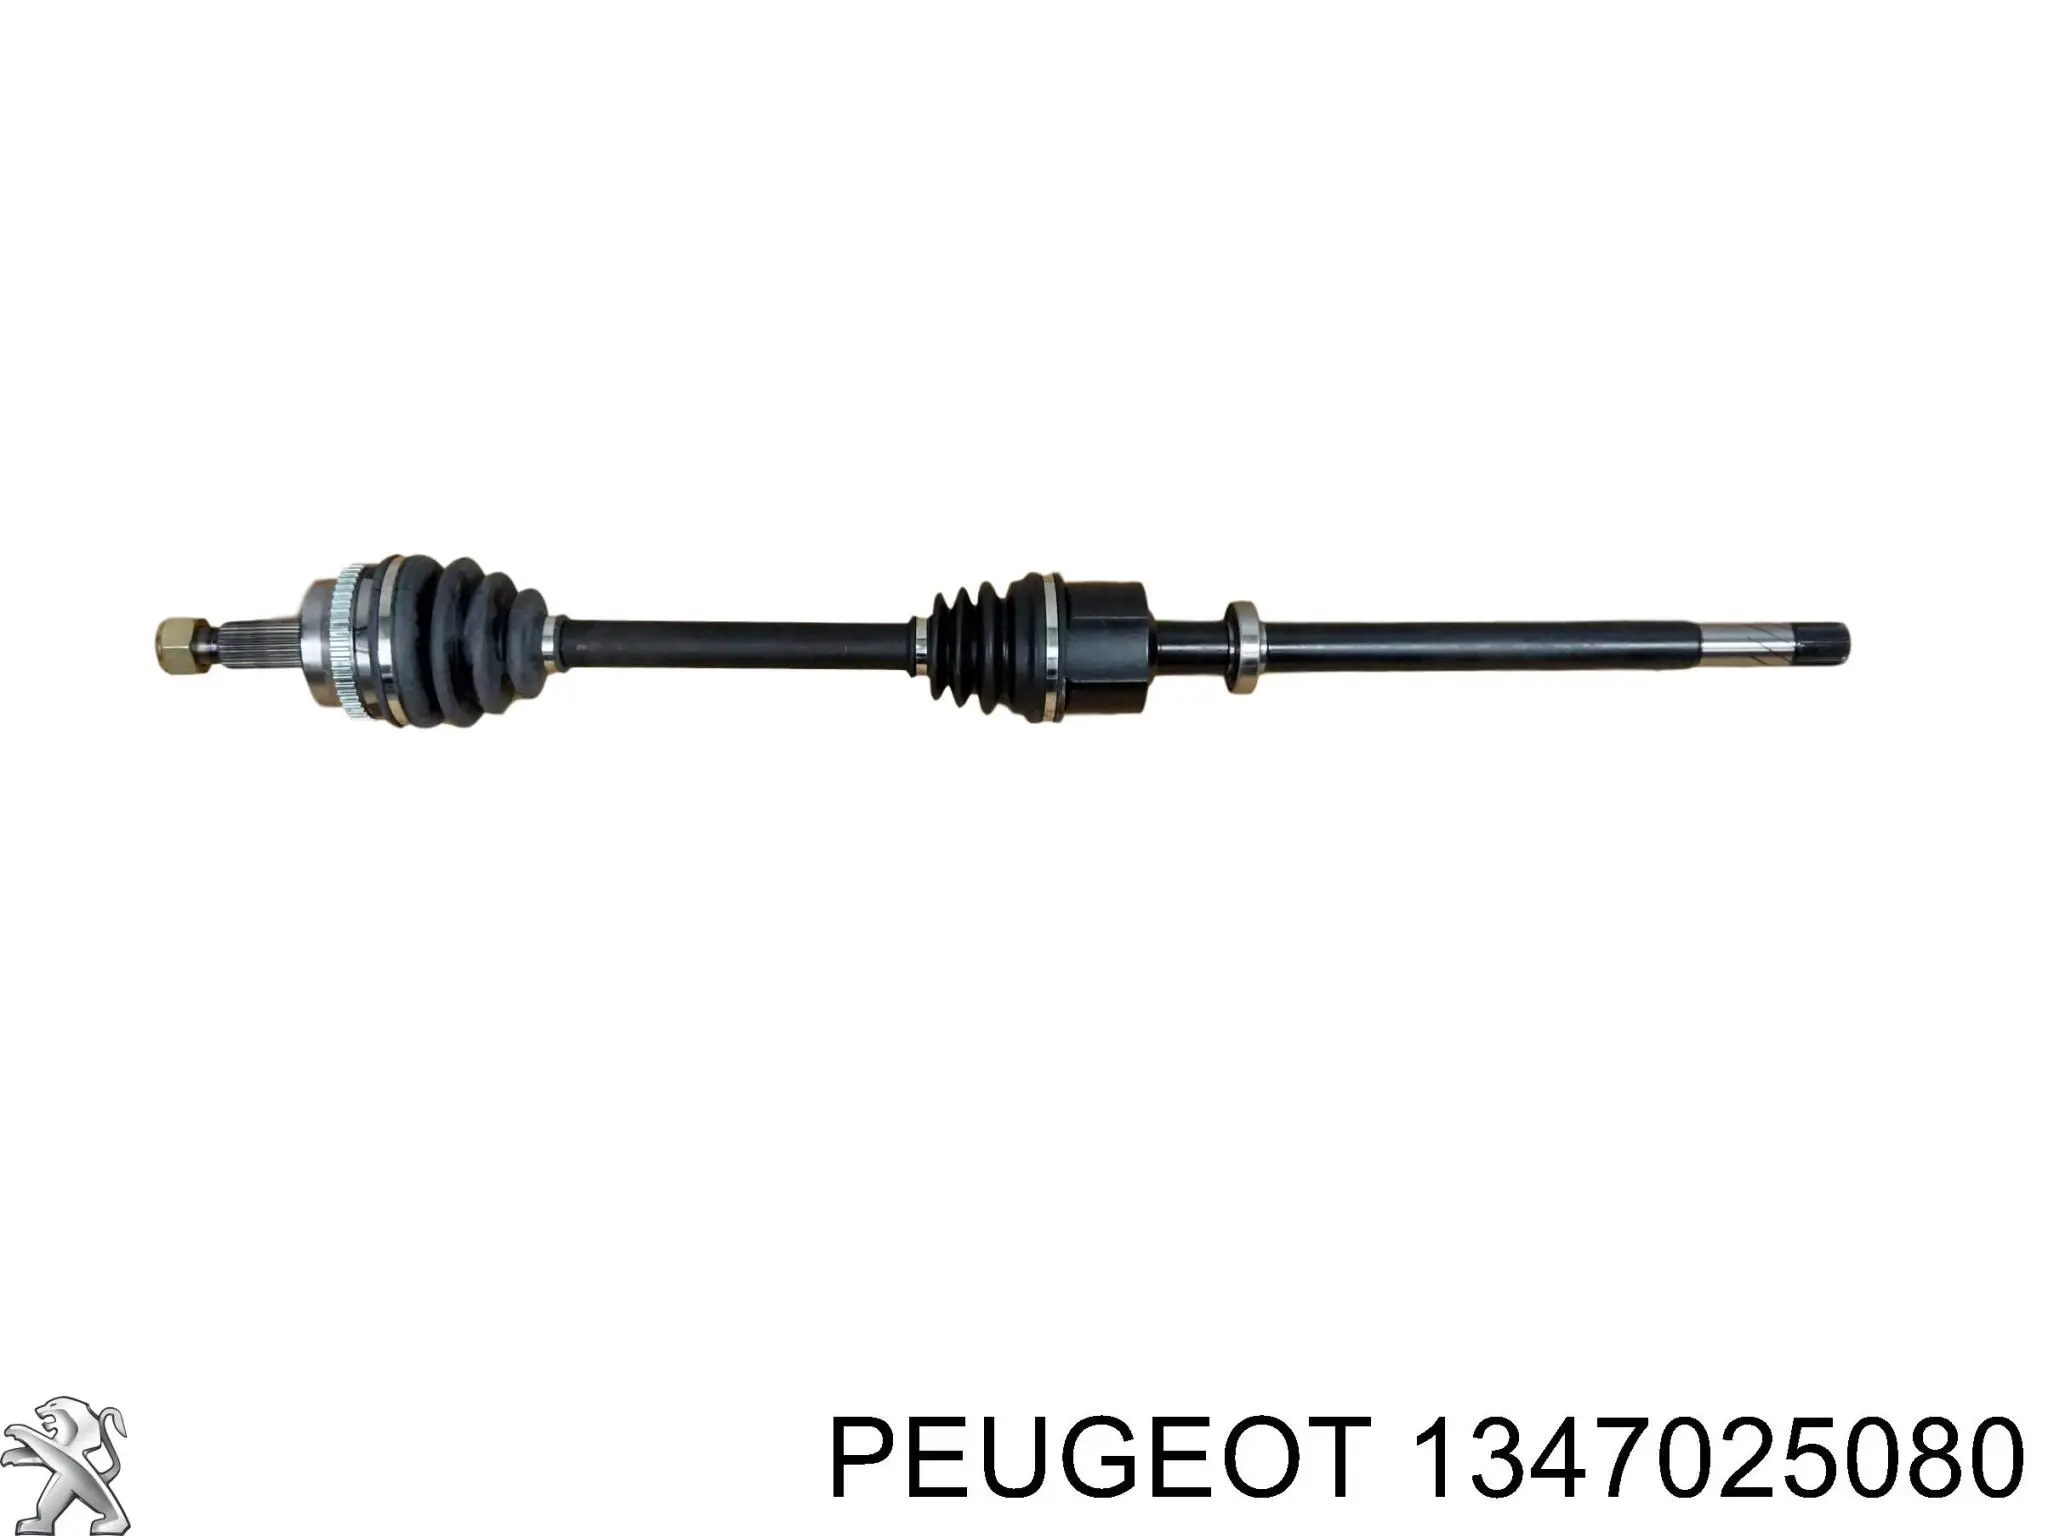 1347025080 Peugeot/Citroen soporte de rodamiento externo del eje delantero